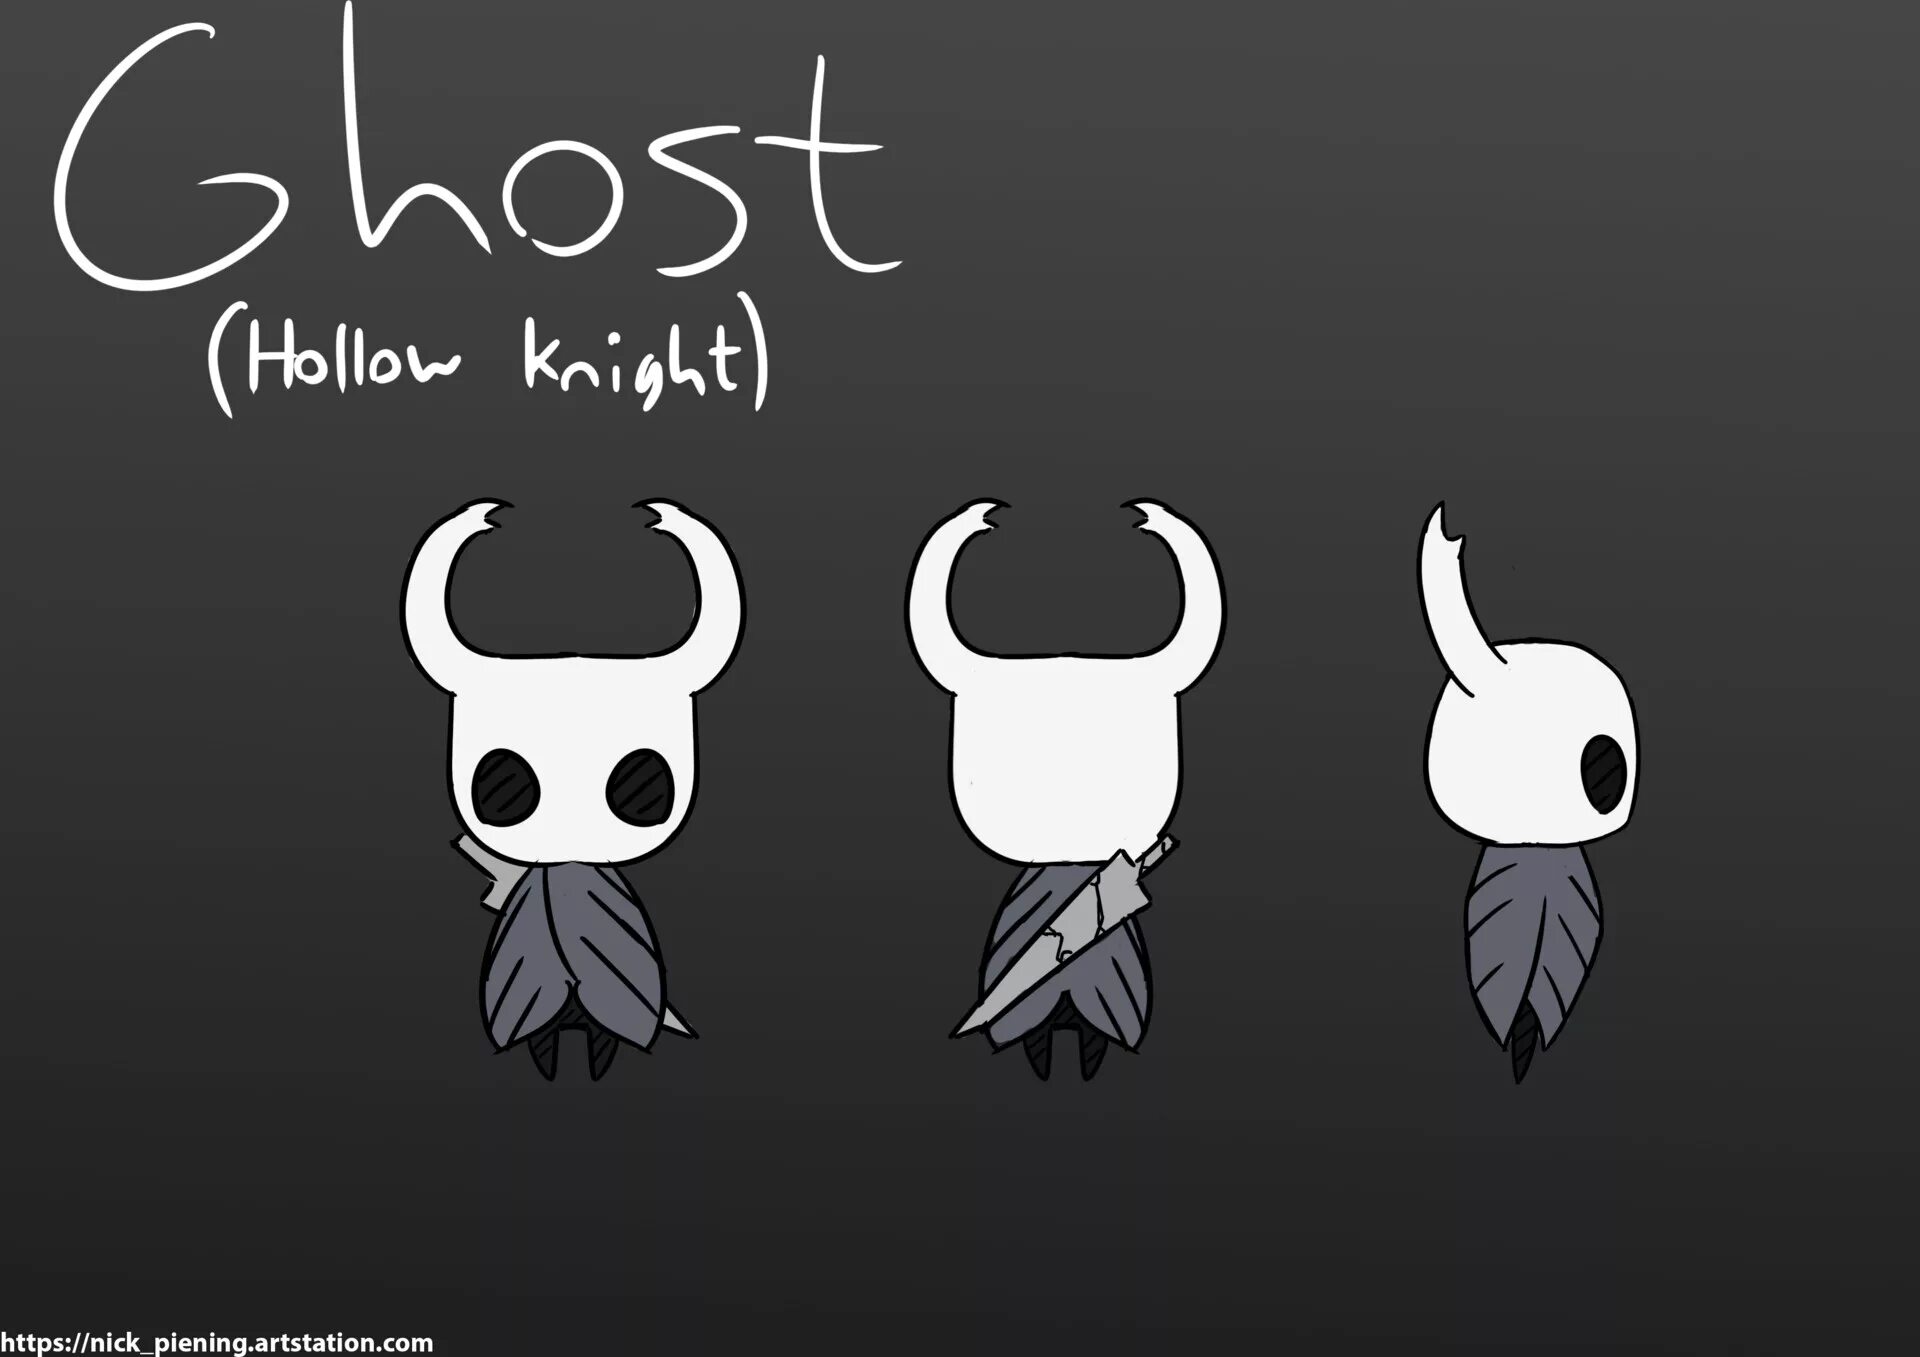 Hollow knight. Hollow Knight призрак. Маленький призрак Hollow Knight. Hollow Knight главный герой. Hollow Knight референсы.